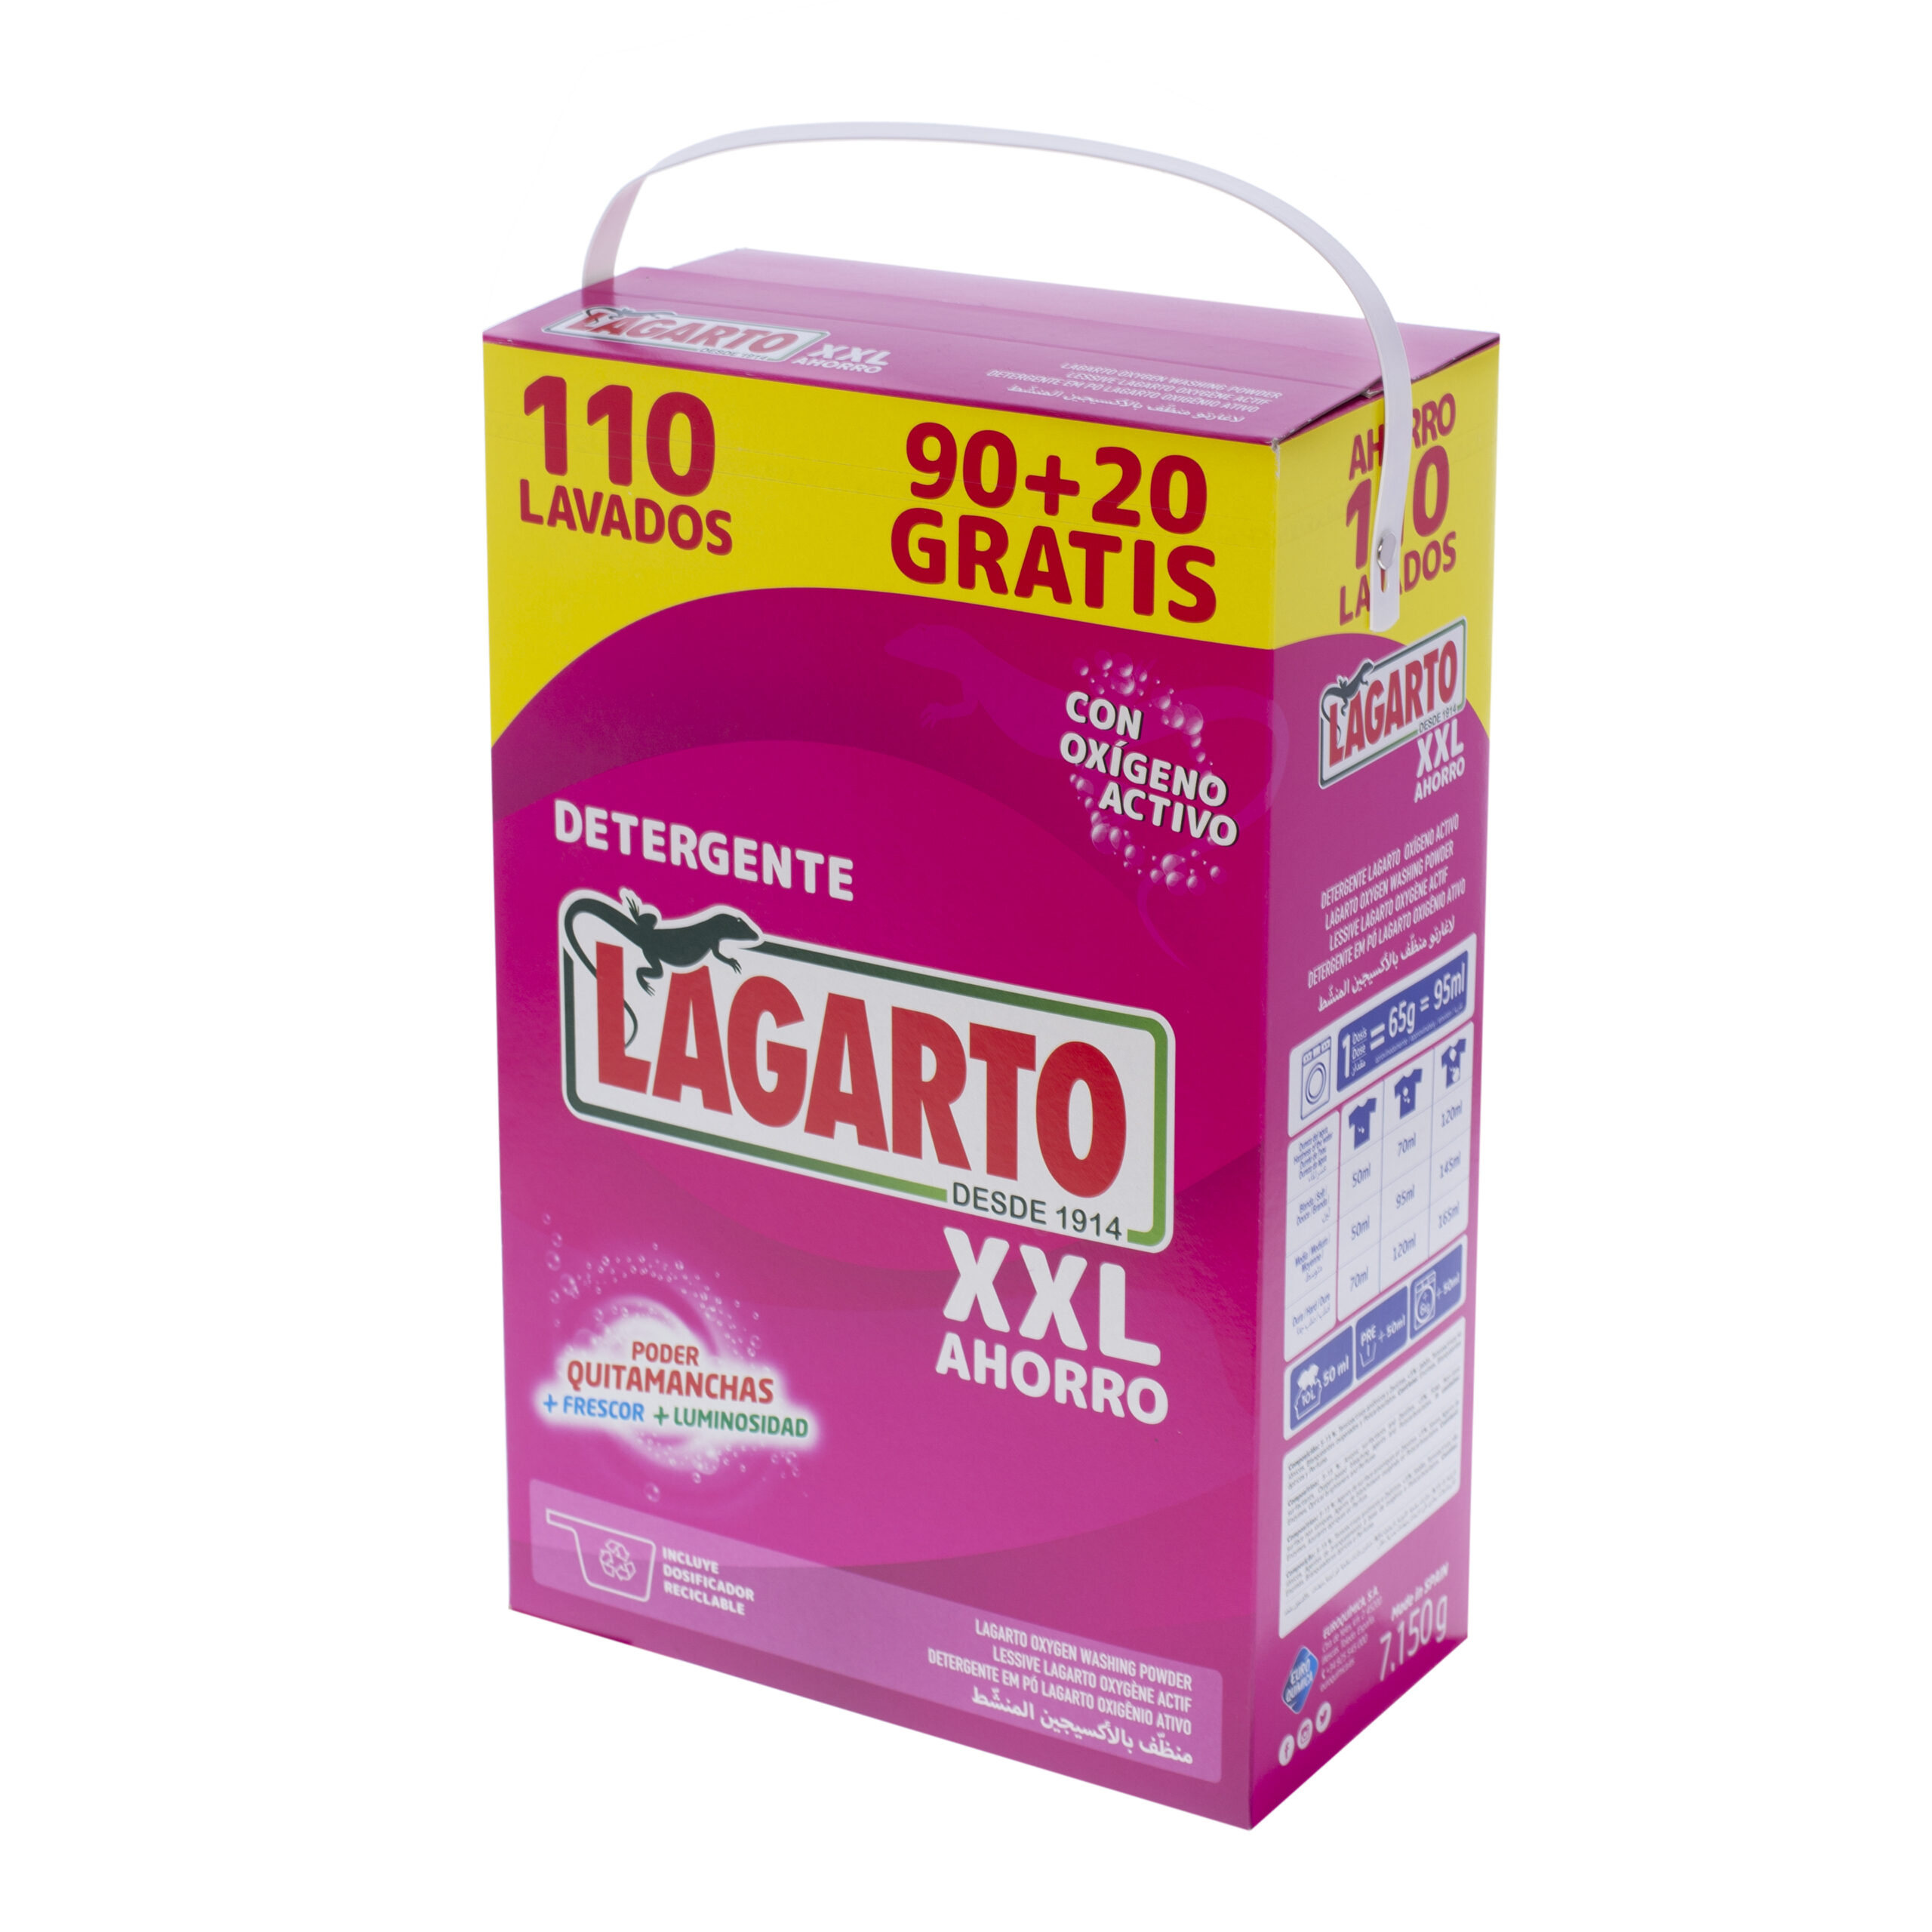 Detergente en polvo Lagarto Oxígeno Activo XXL (110 lavados) por sólo  12,50€